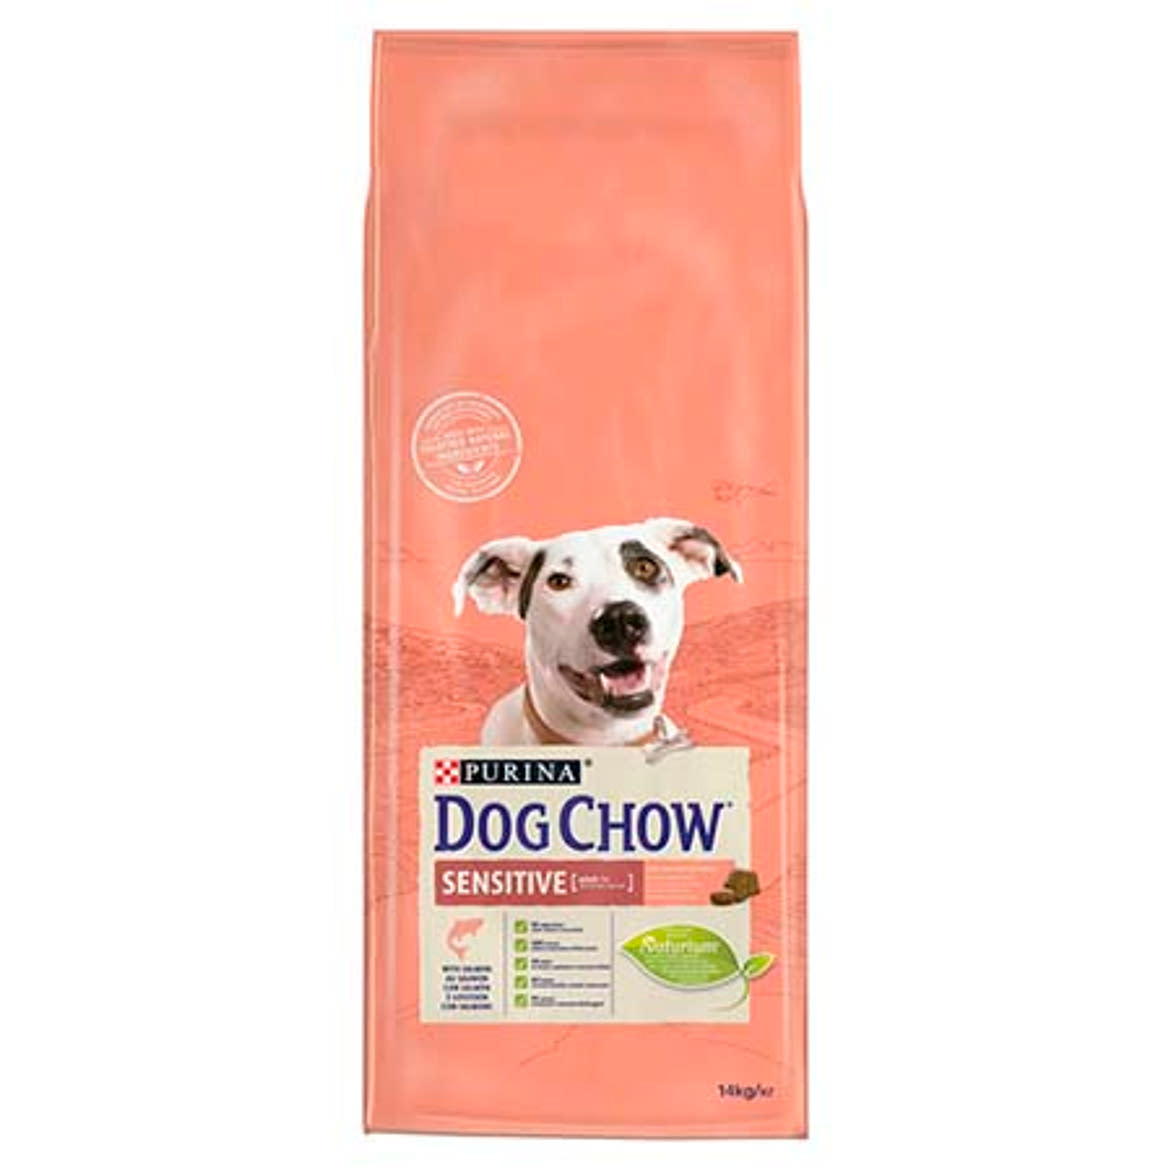 Dog Chow kutya szárazeledel sensitive lazac